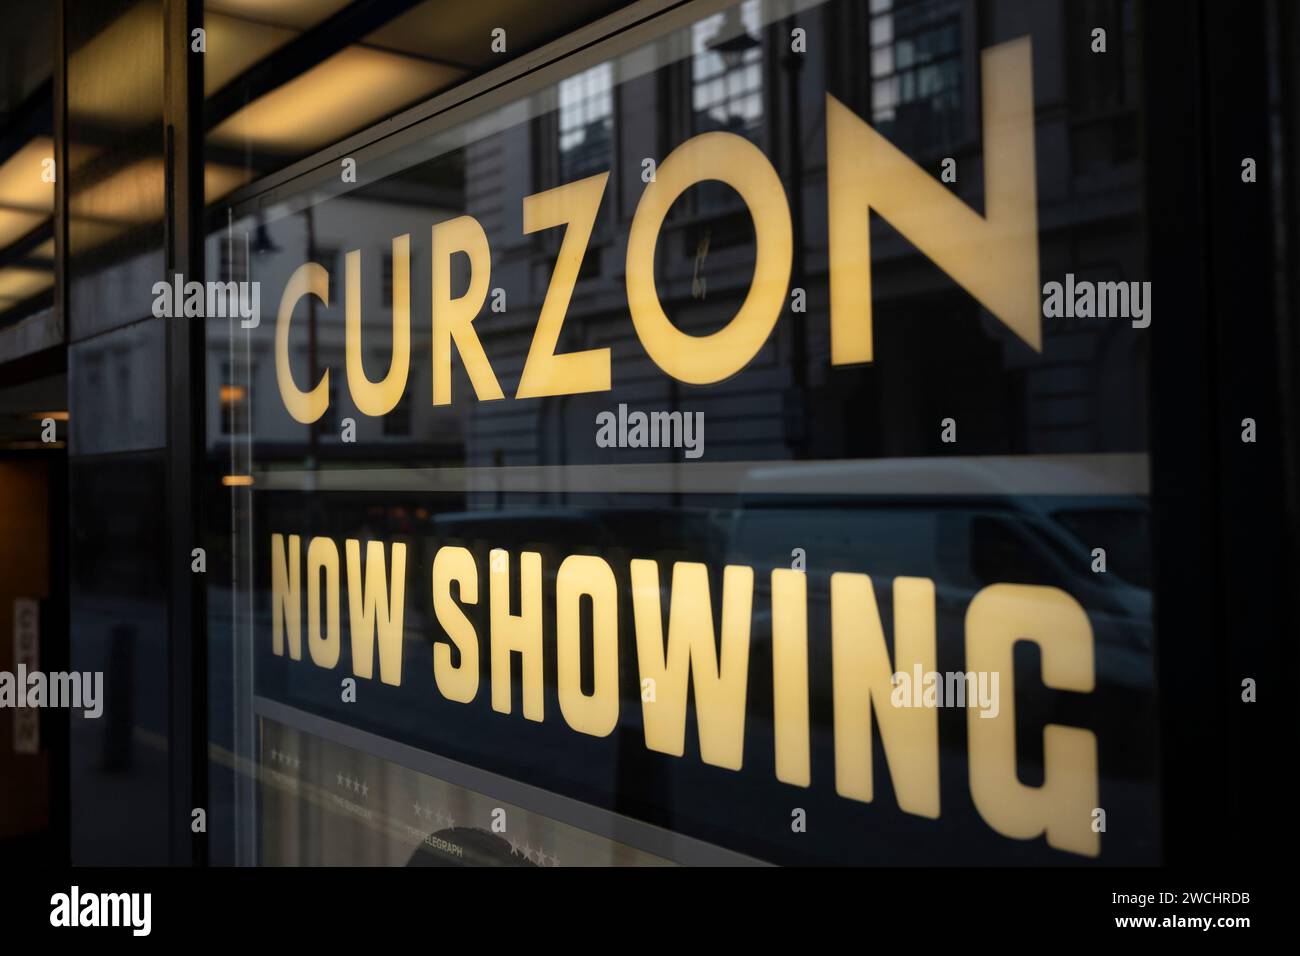 Il Curzon Mayfair Cinema, edificio classificato di grado II al 37–38 Curzon Street nel cuore di Londra Mayfair, Inghilterra, Regno Unito Foto Stock